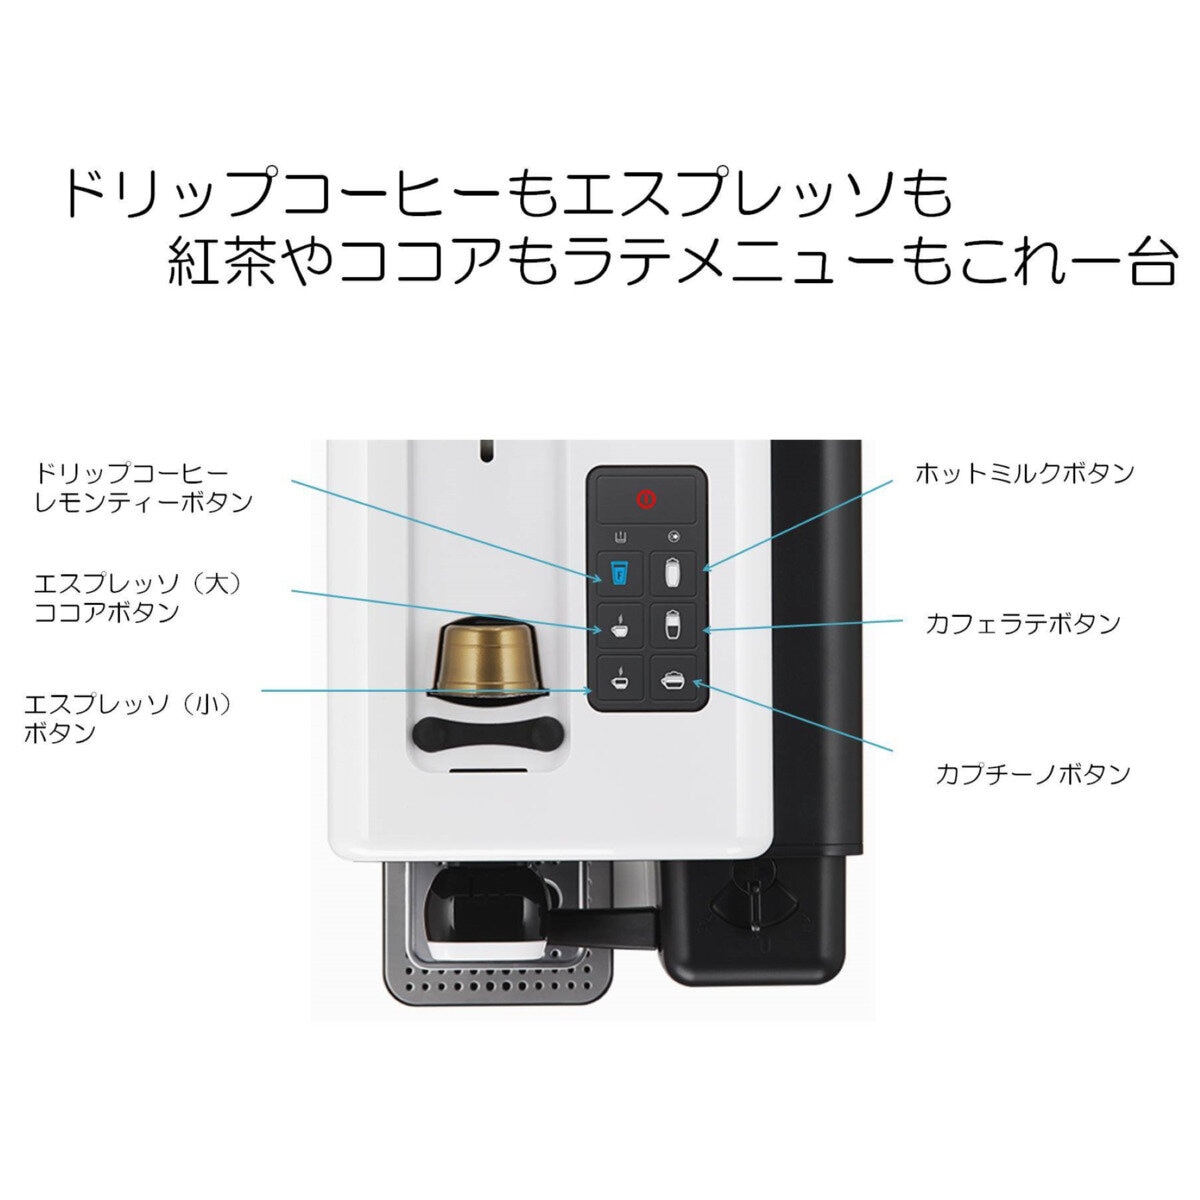 カフィタリーシステム カプセル式コーヒーマシン S-22 | Costco Japan